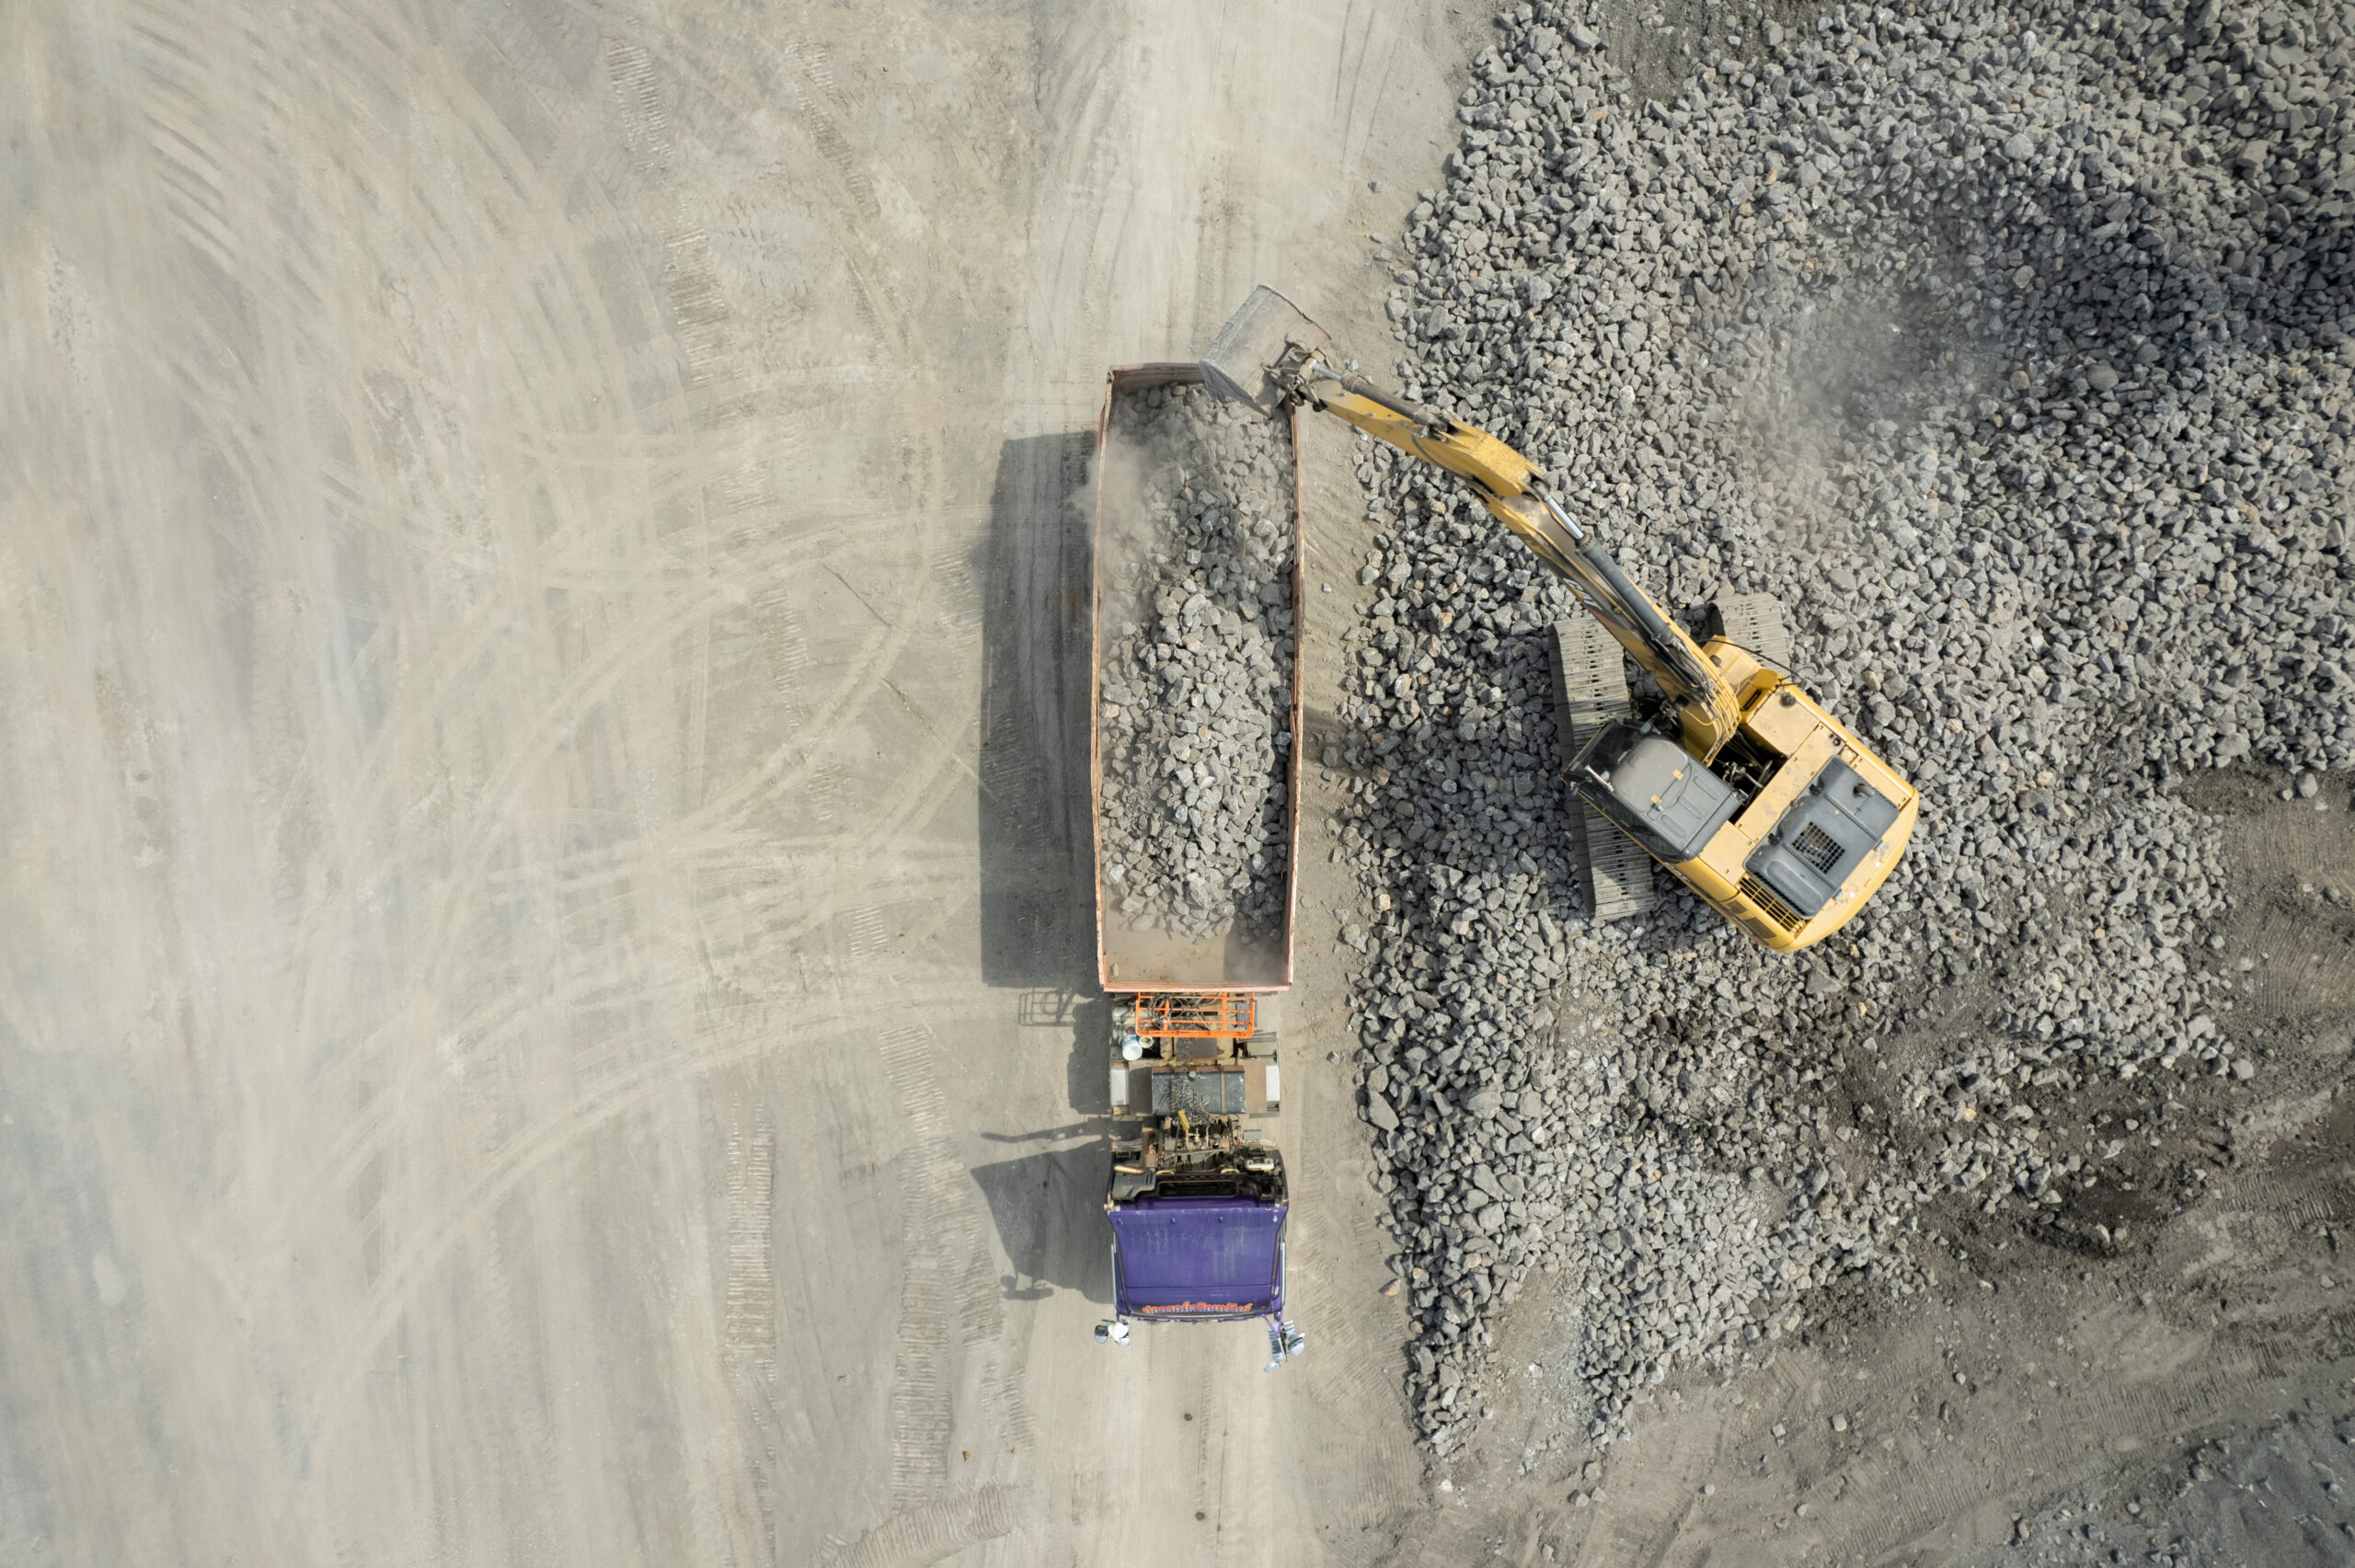 aerial view of excavator scooping rocks